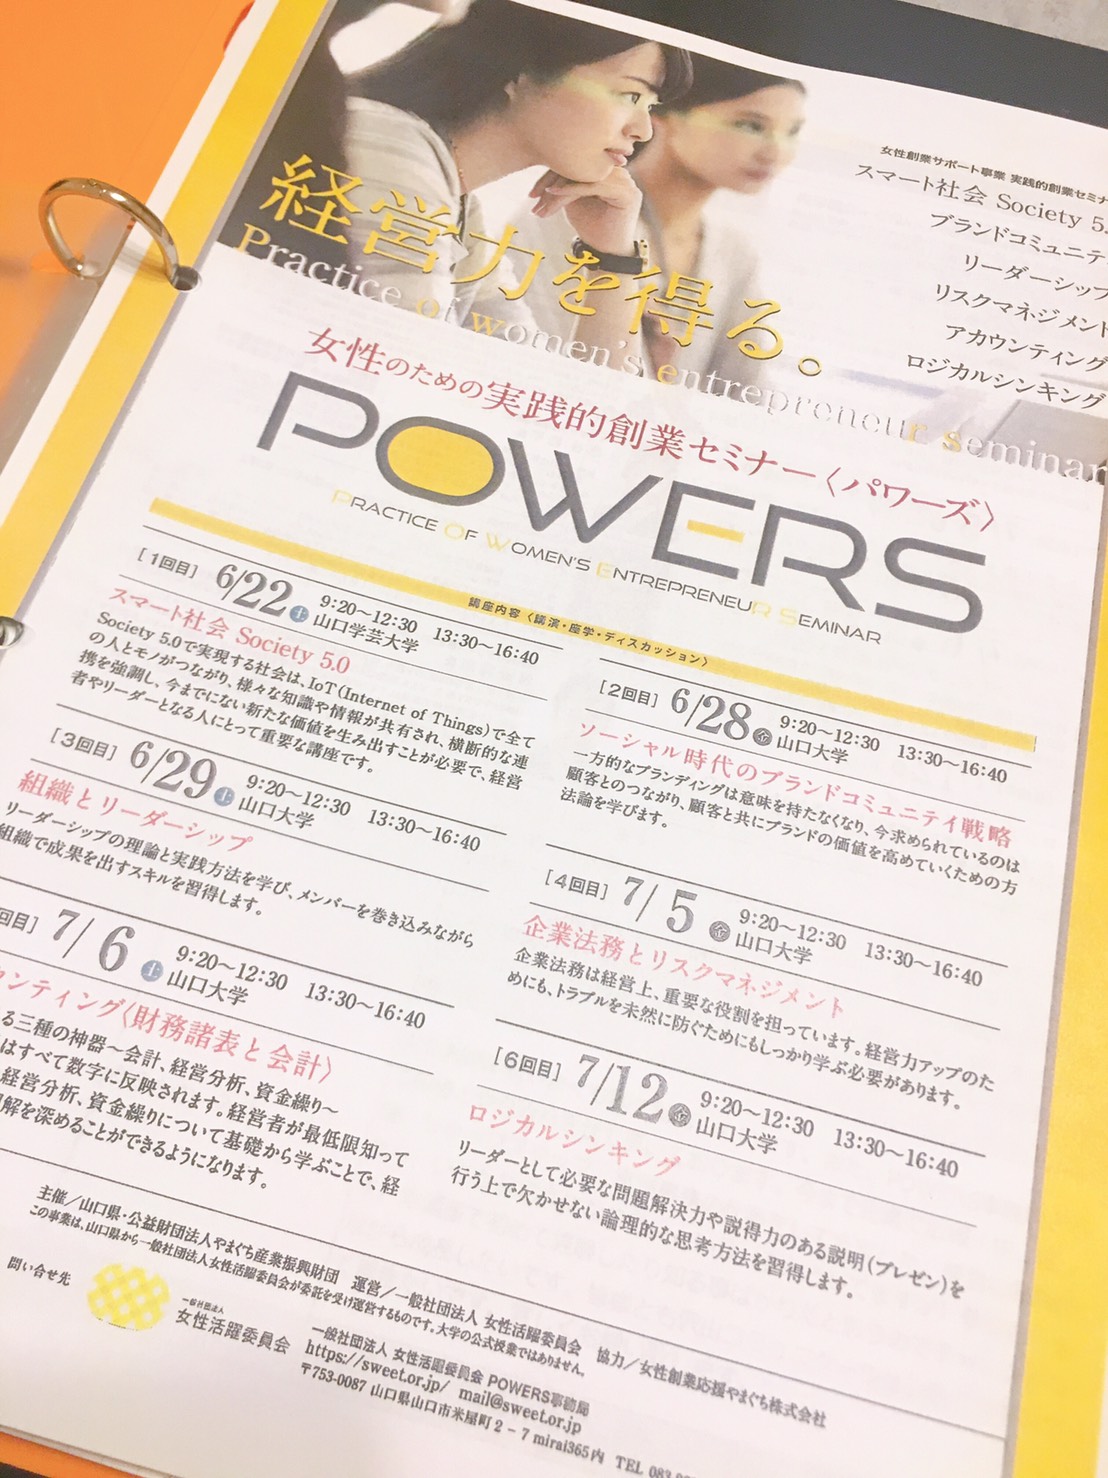 山口県女性創業サポート事業実践的創業セミナー「POWERS」